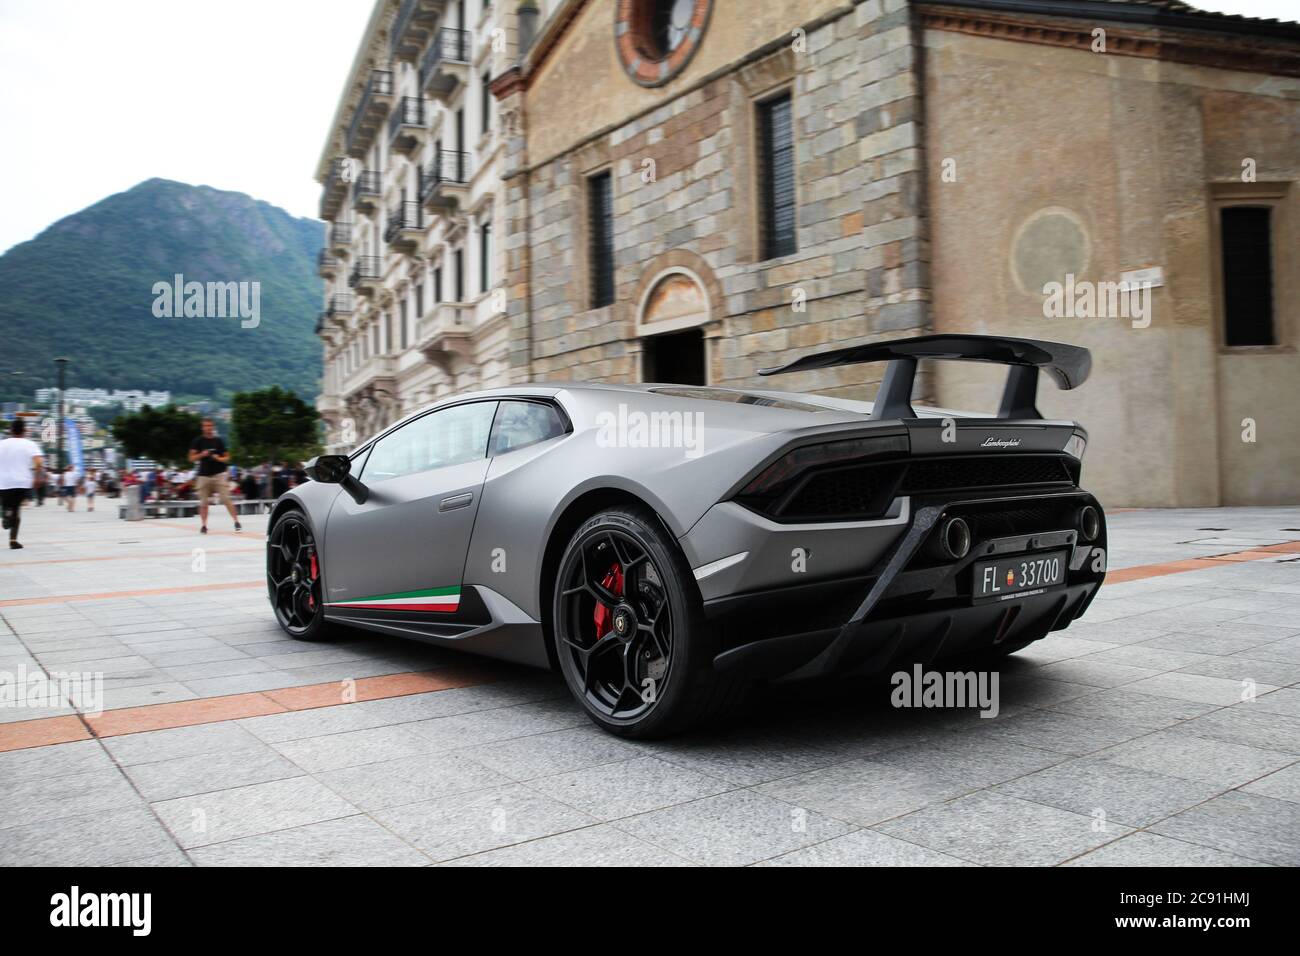 Gray Lamborghini Huracan Performa Supercar moderne participant à l'événement annuel Cars & Coffee Lugano en Suisse. Banque D'Images